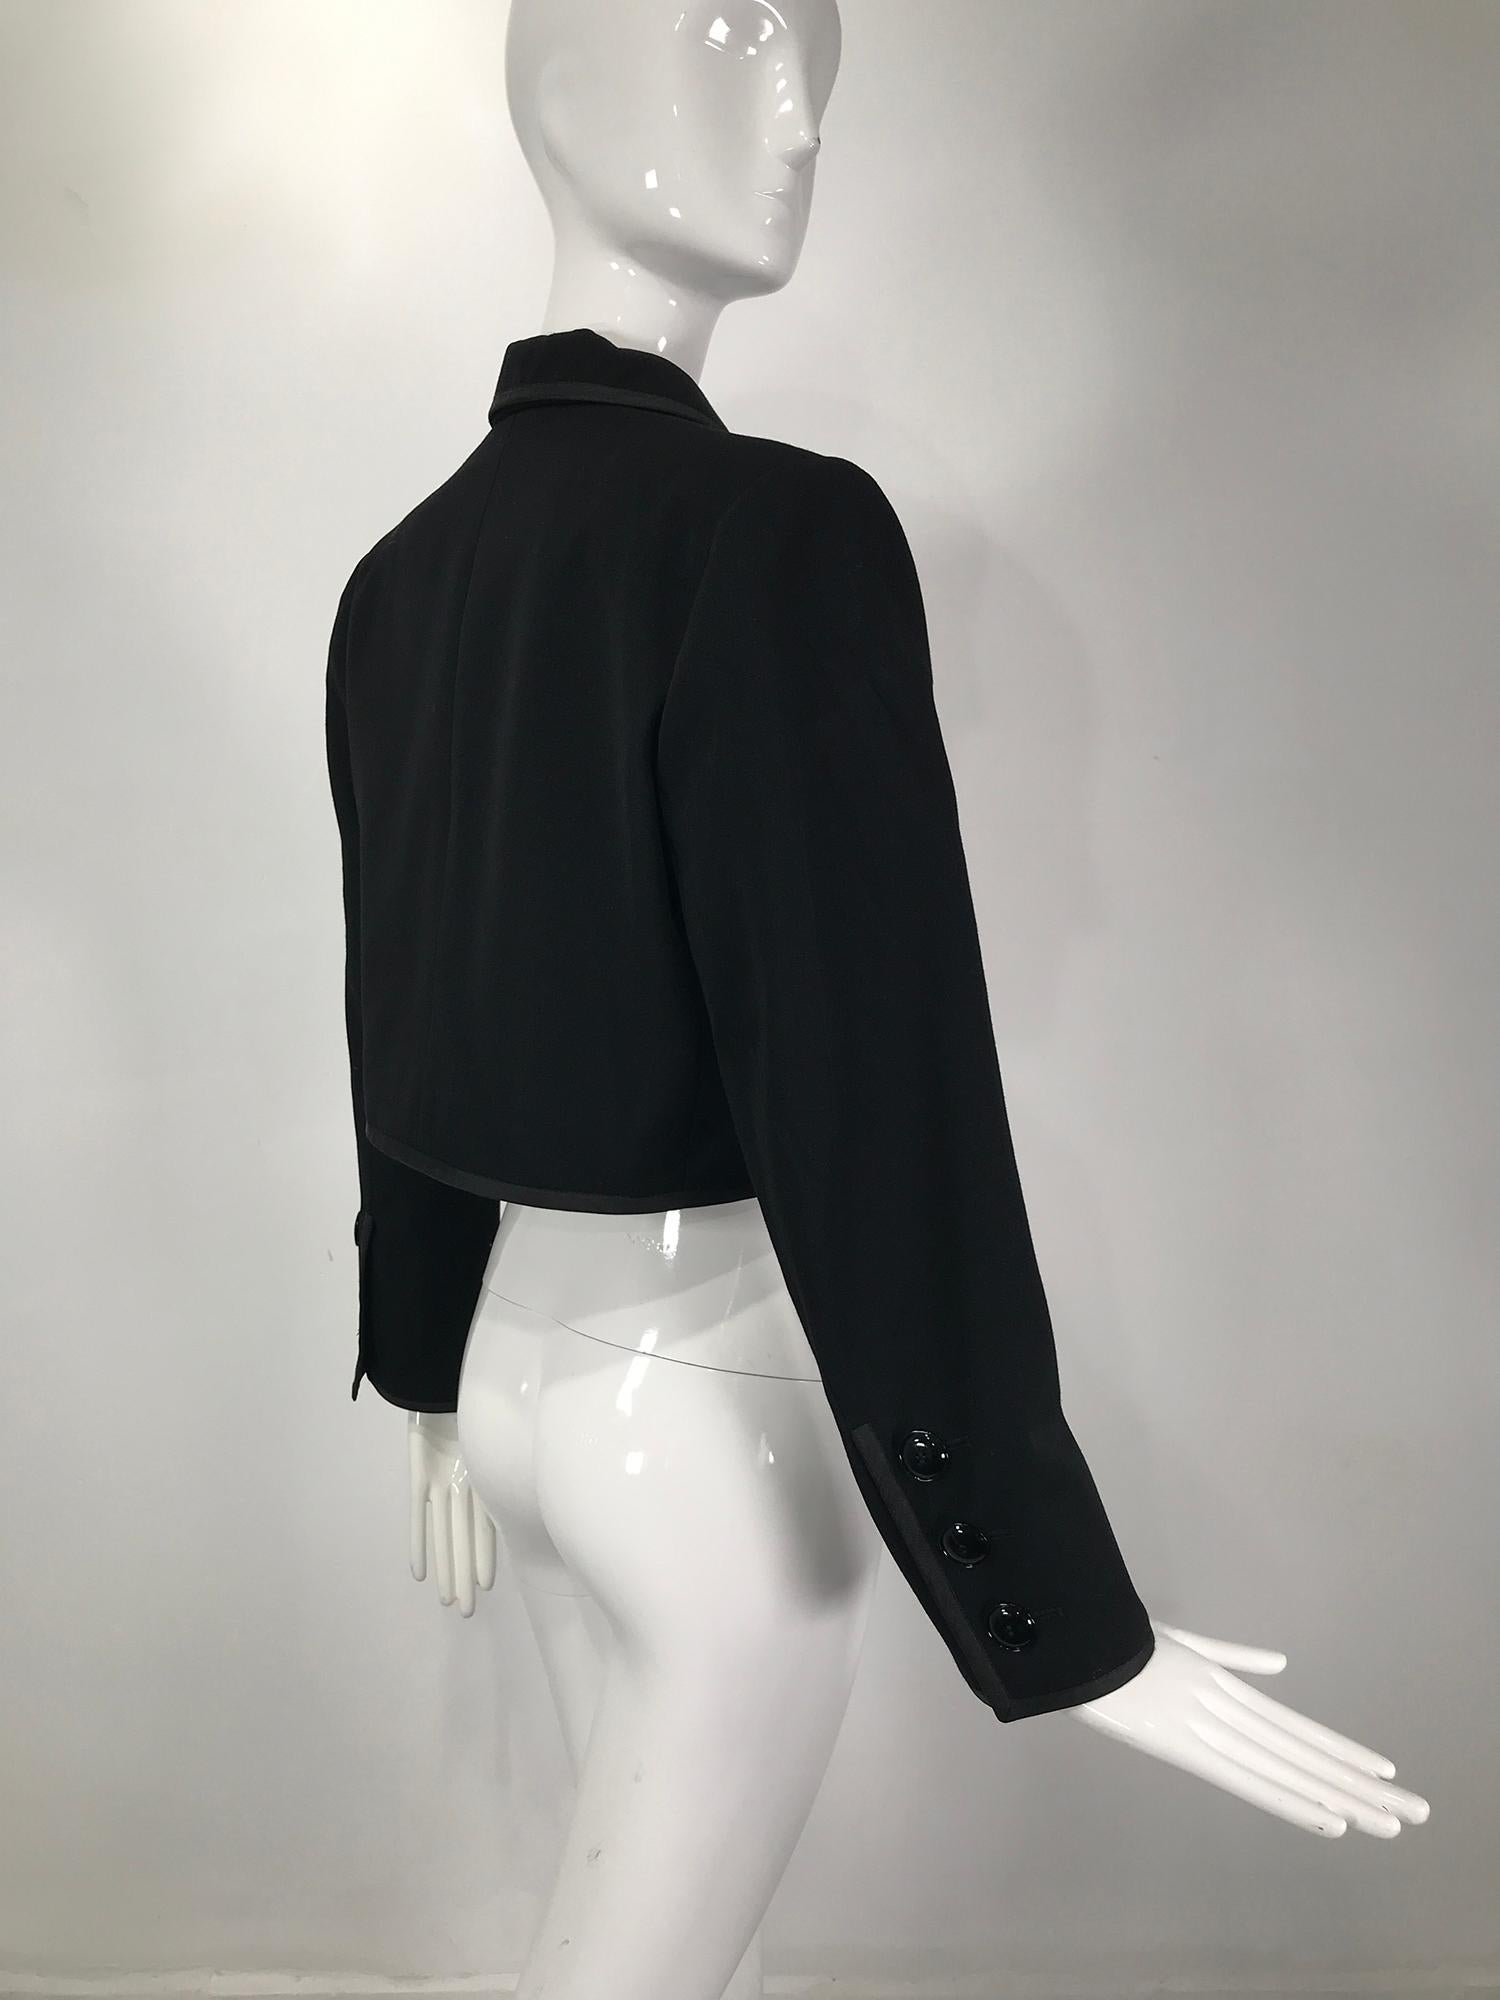 Yves Saint Laurent Black Gabardine Cropped Jacket 1970s 1